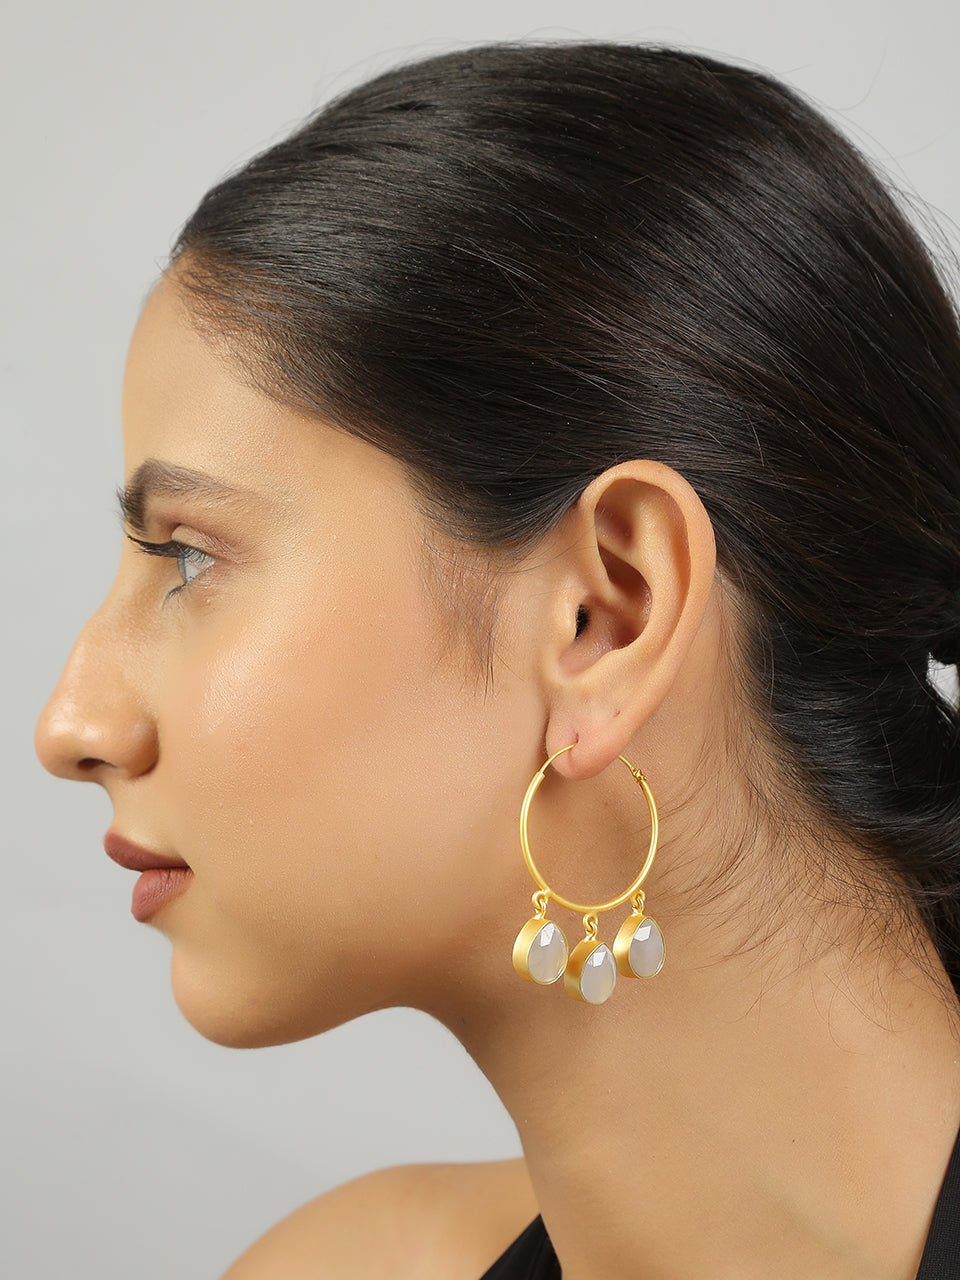 Women's Classic Gold Hoop Earrings - Femizen